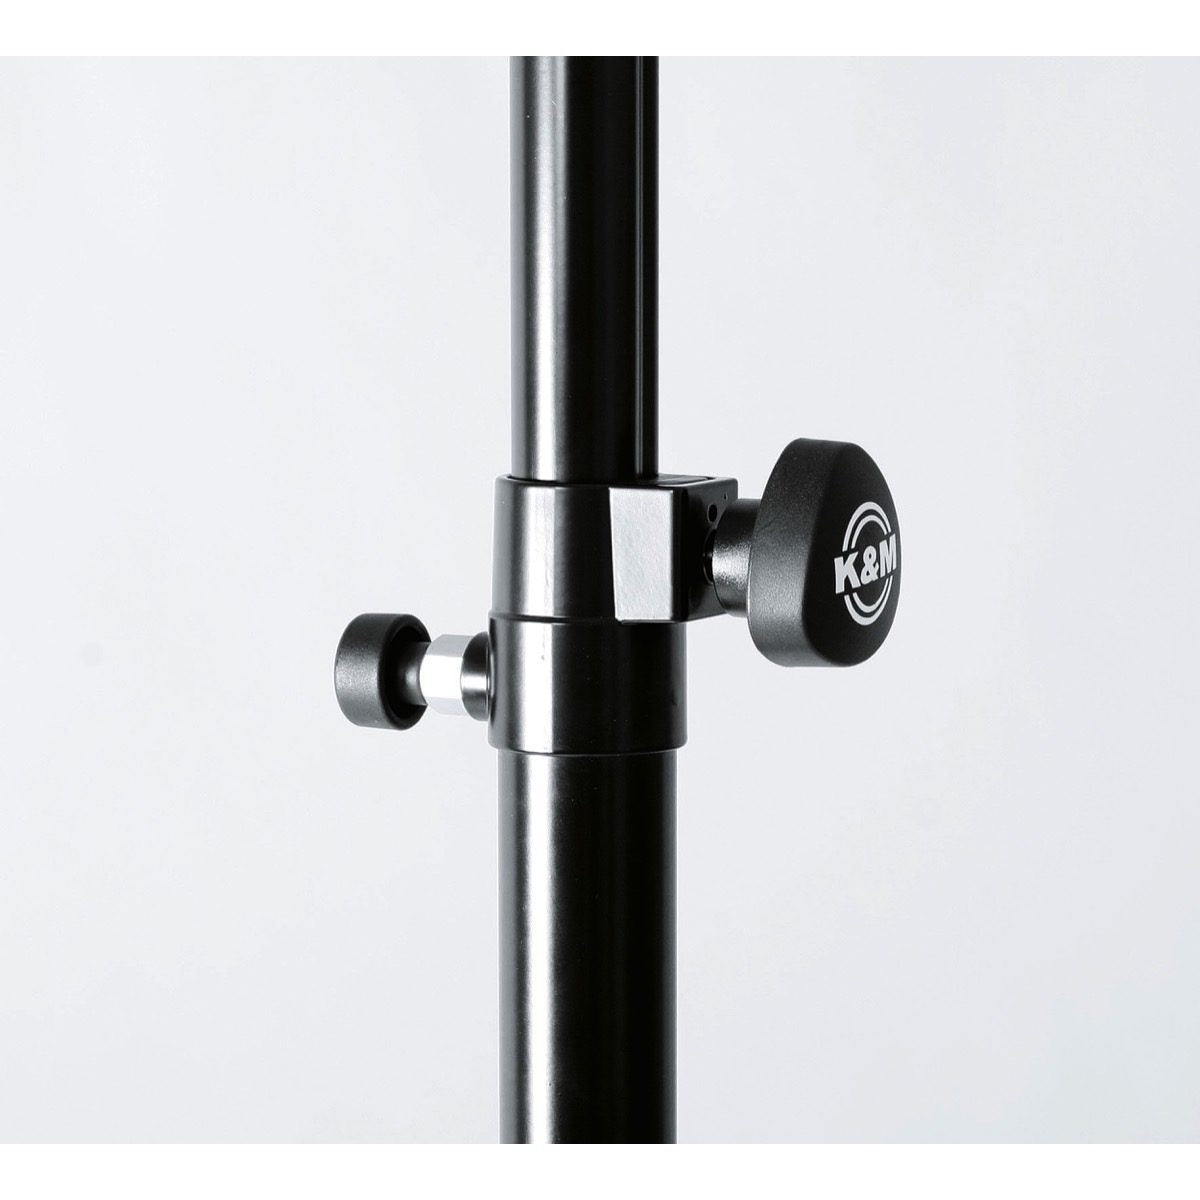 K&M 21367 Adjustable Ring Lock M20 Sub Pole